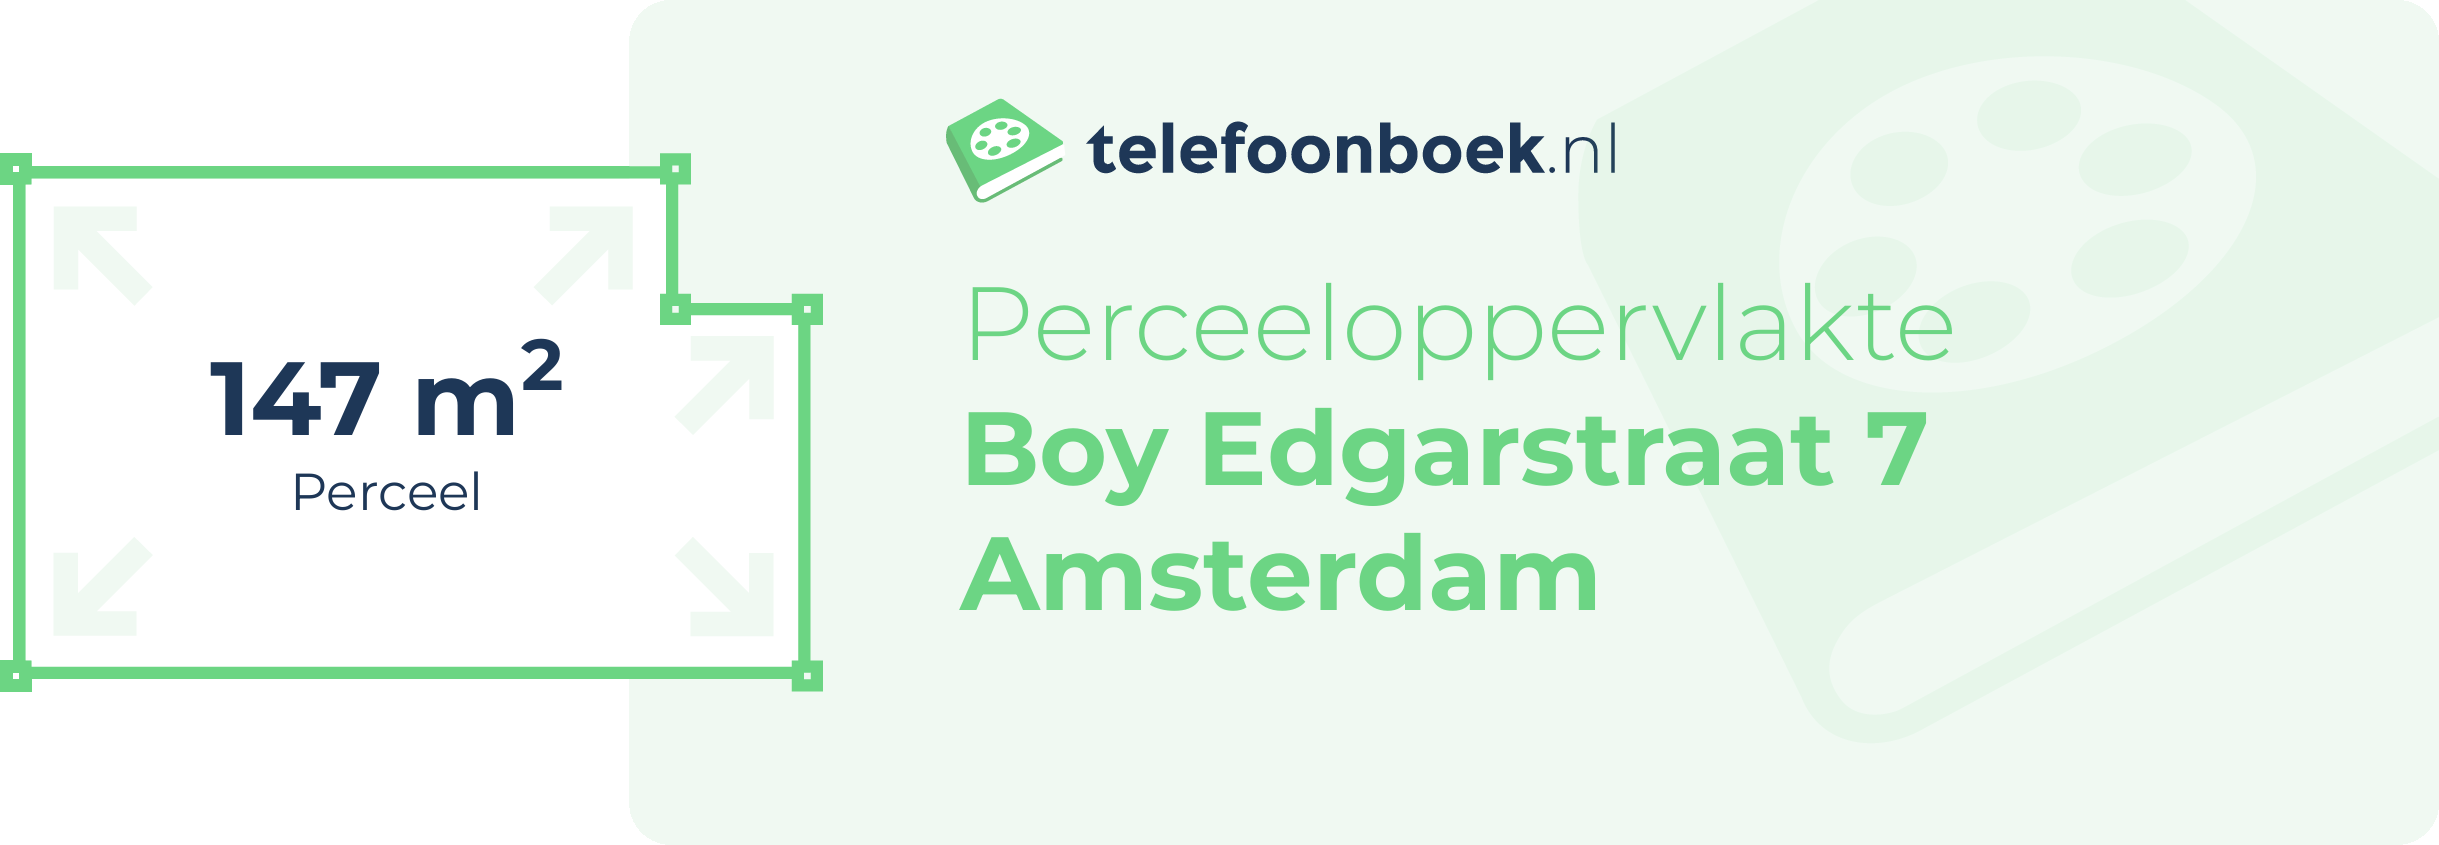 Perceeloppervlakte Boy Edgarstraat 7 Amsterdam